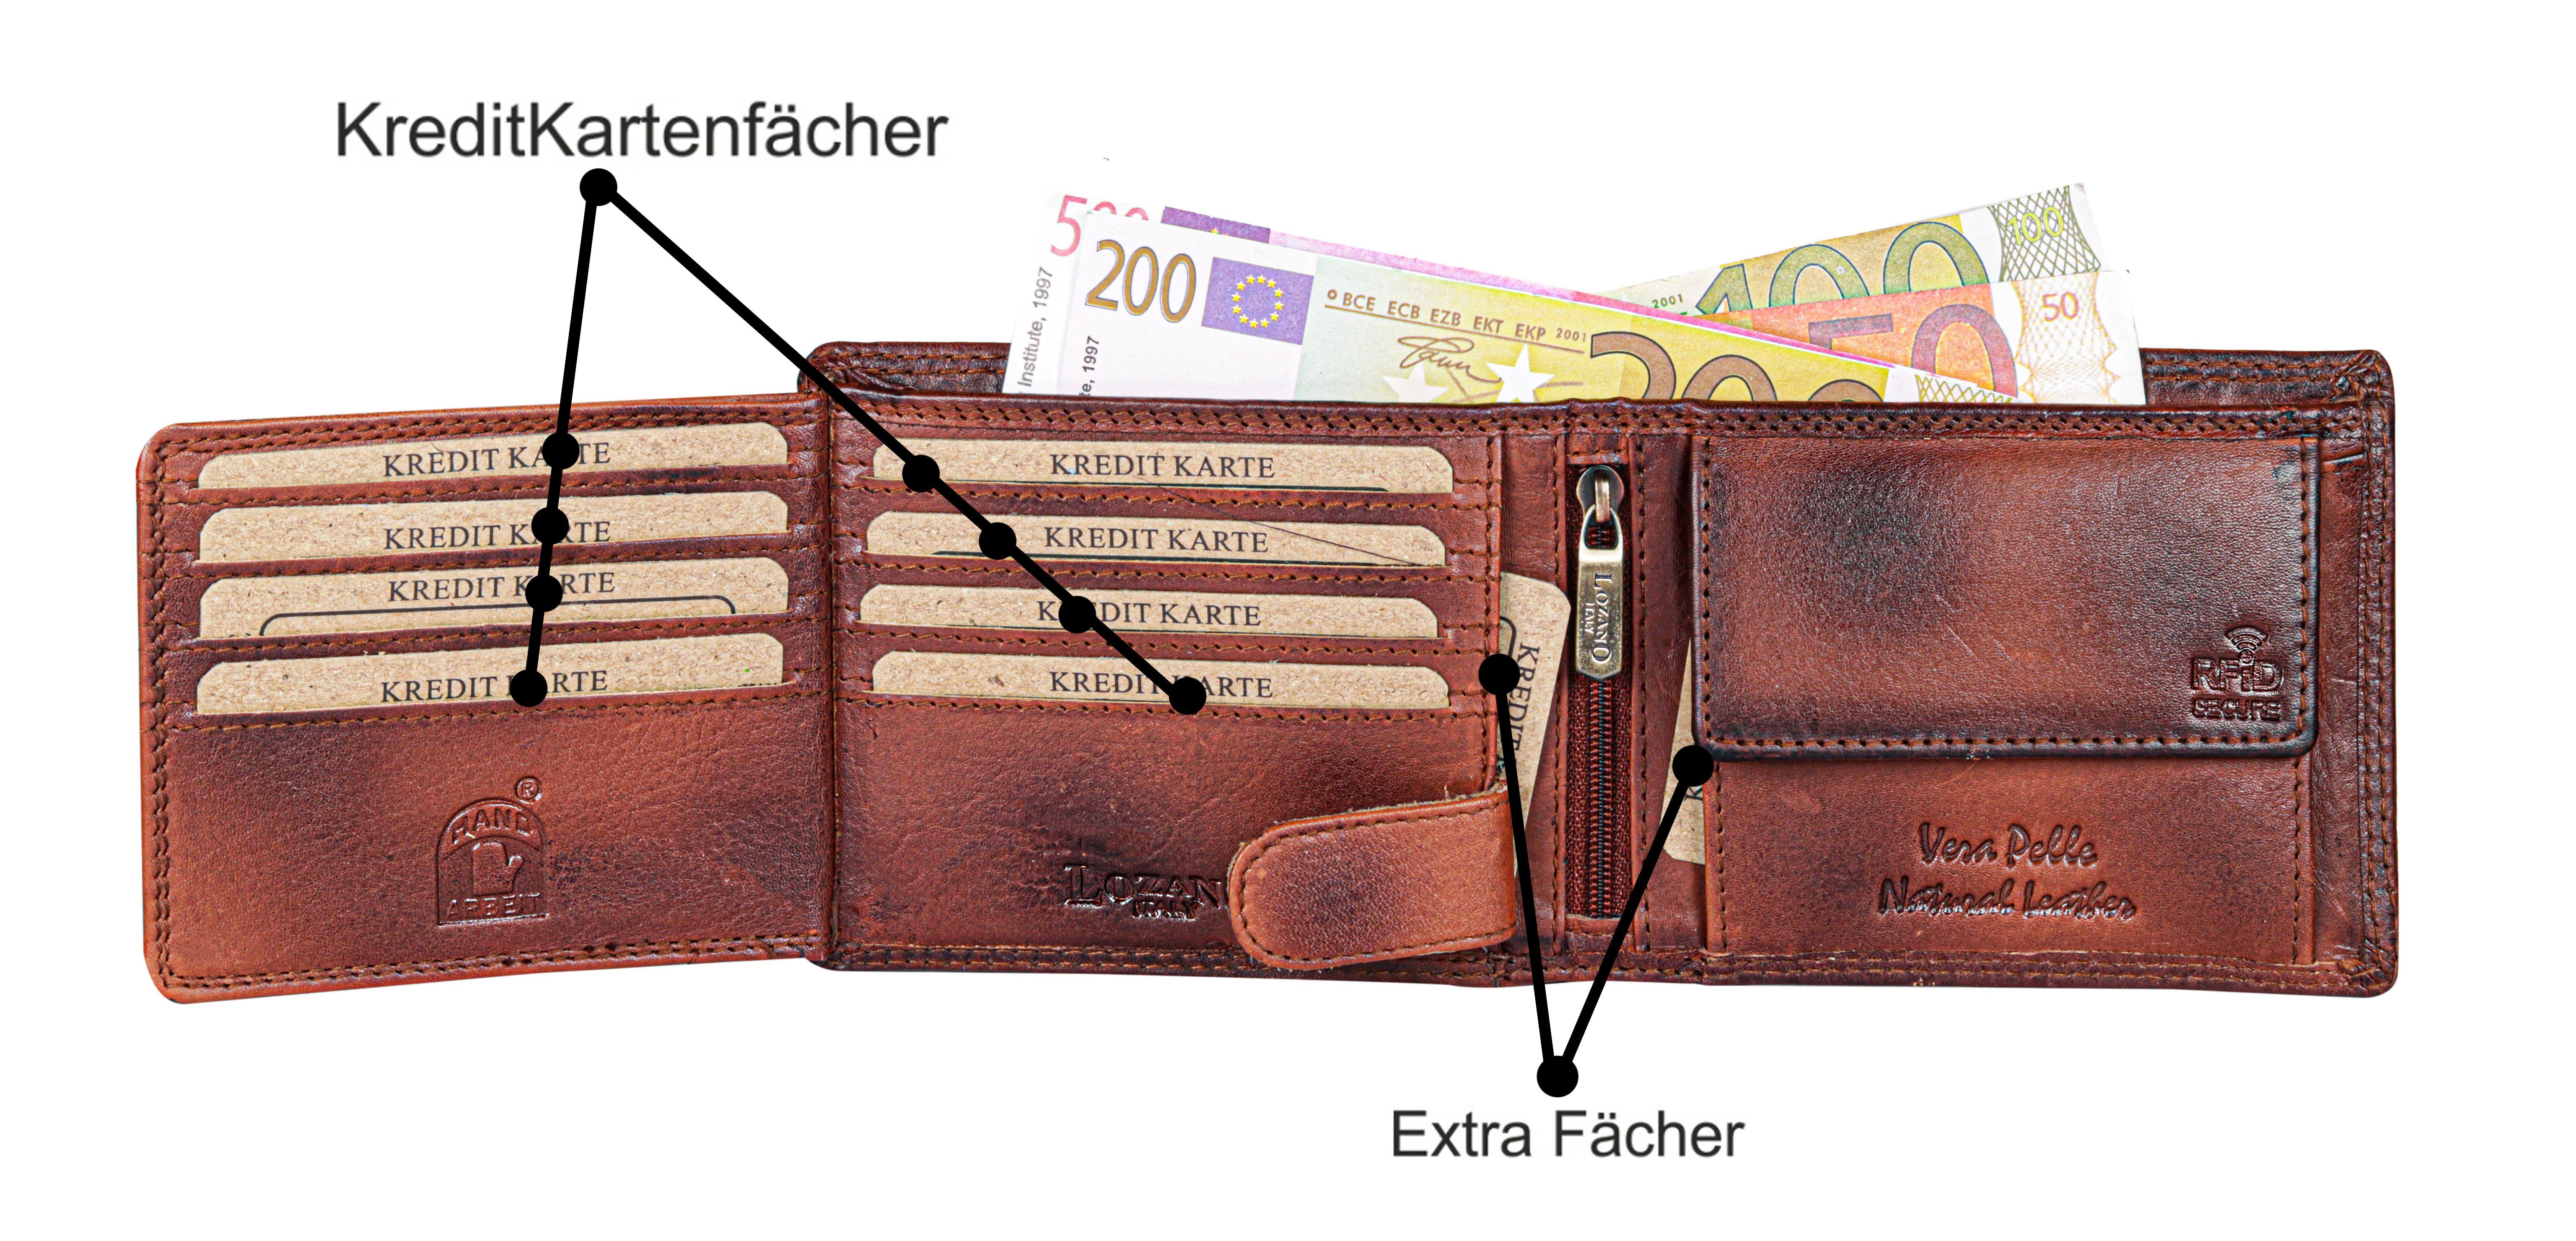 SHG Geldbörse Herren Leder Börse RFID Portemonnaie, Büffelleder Schutz Lederbörse mit Brieftasche Männerbörse Münzfach